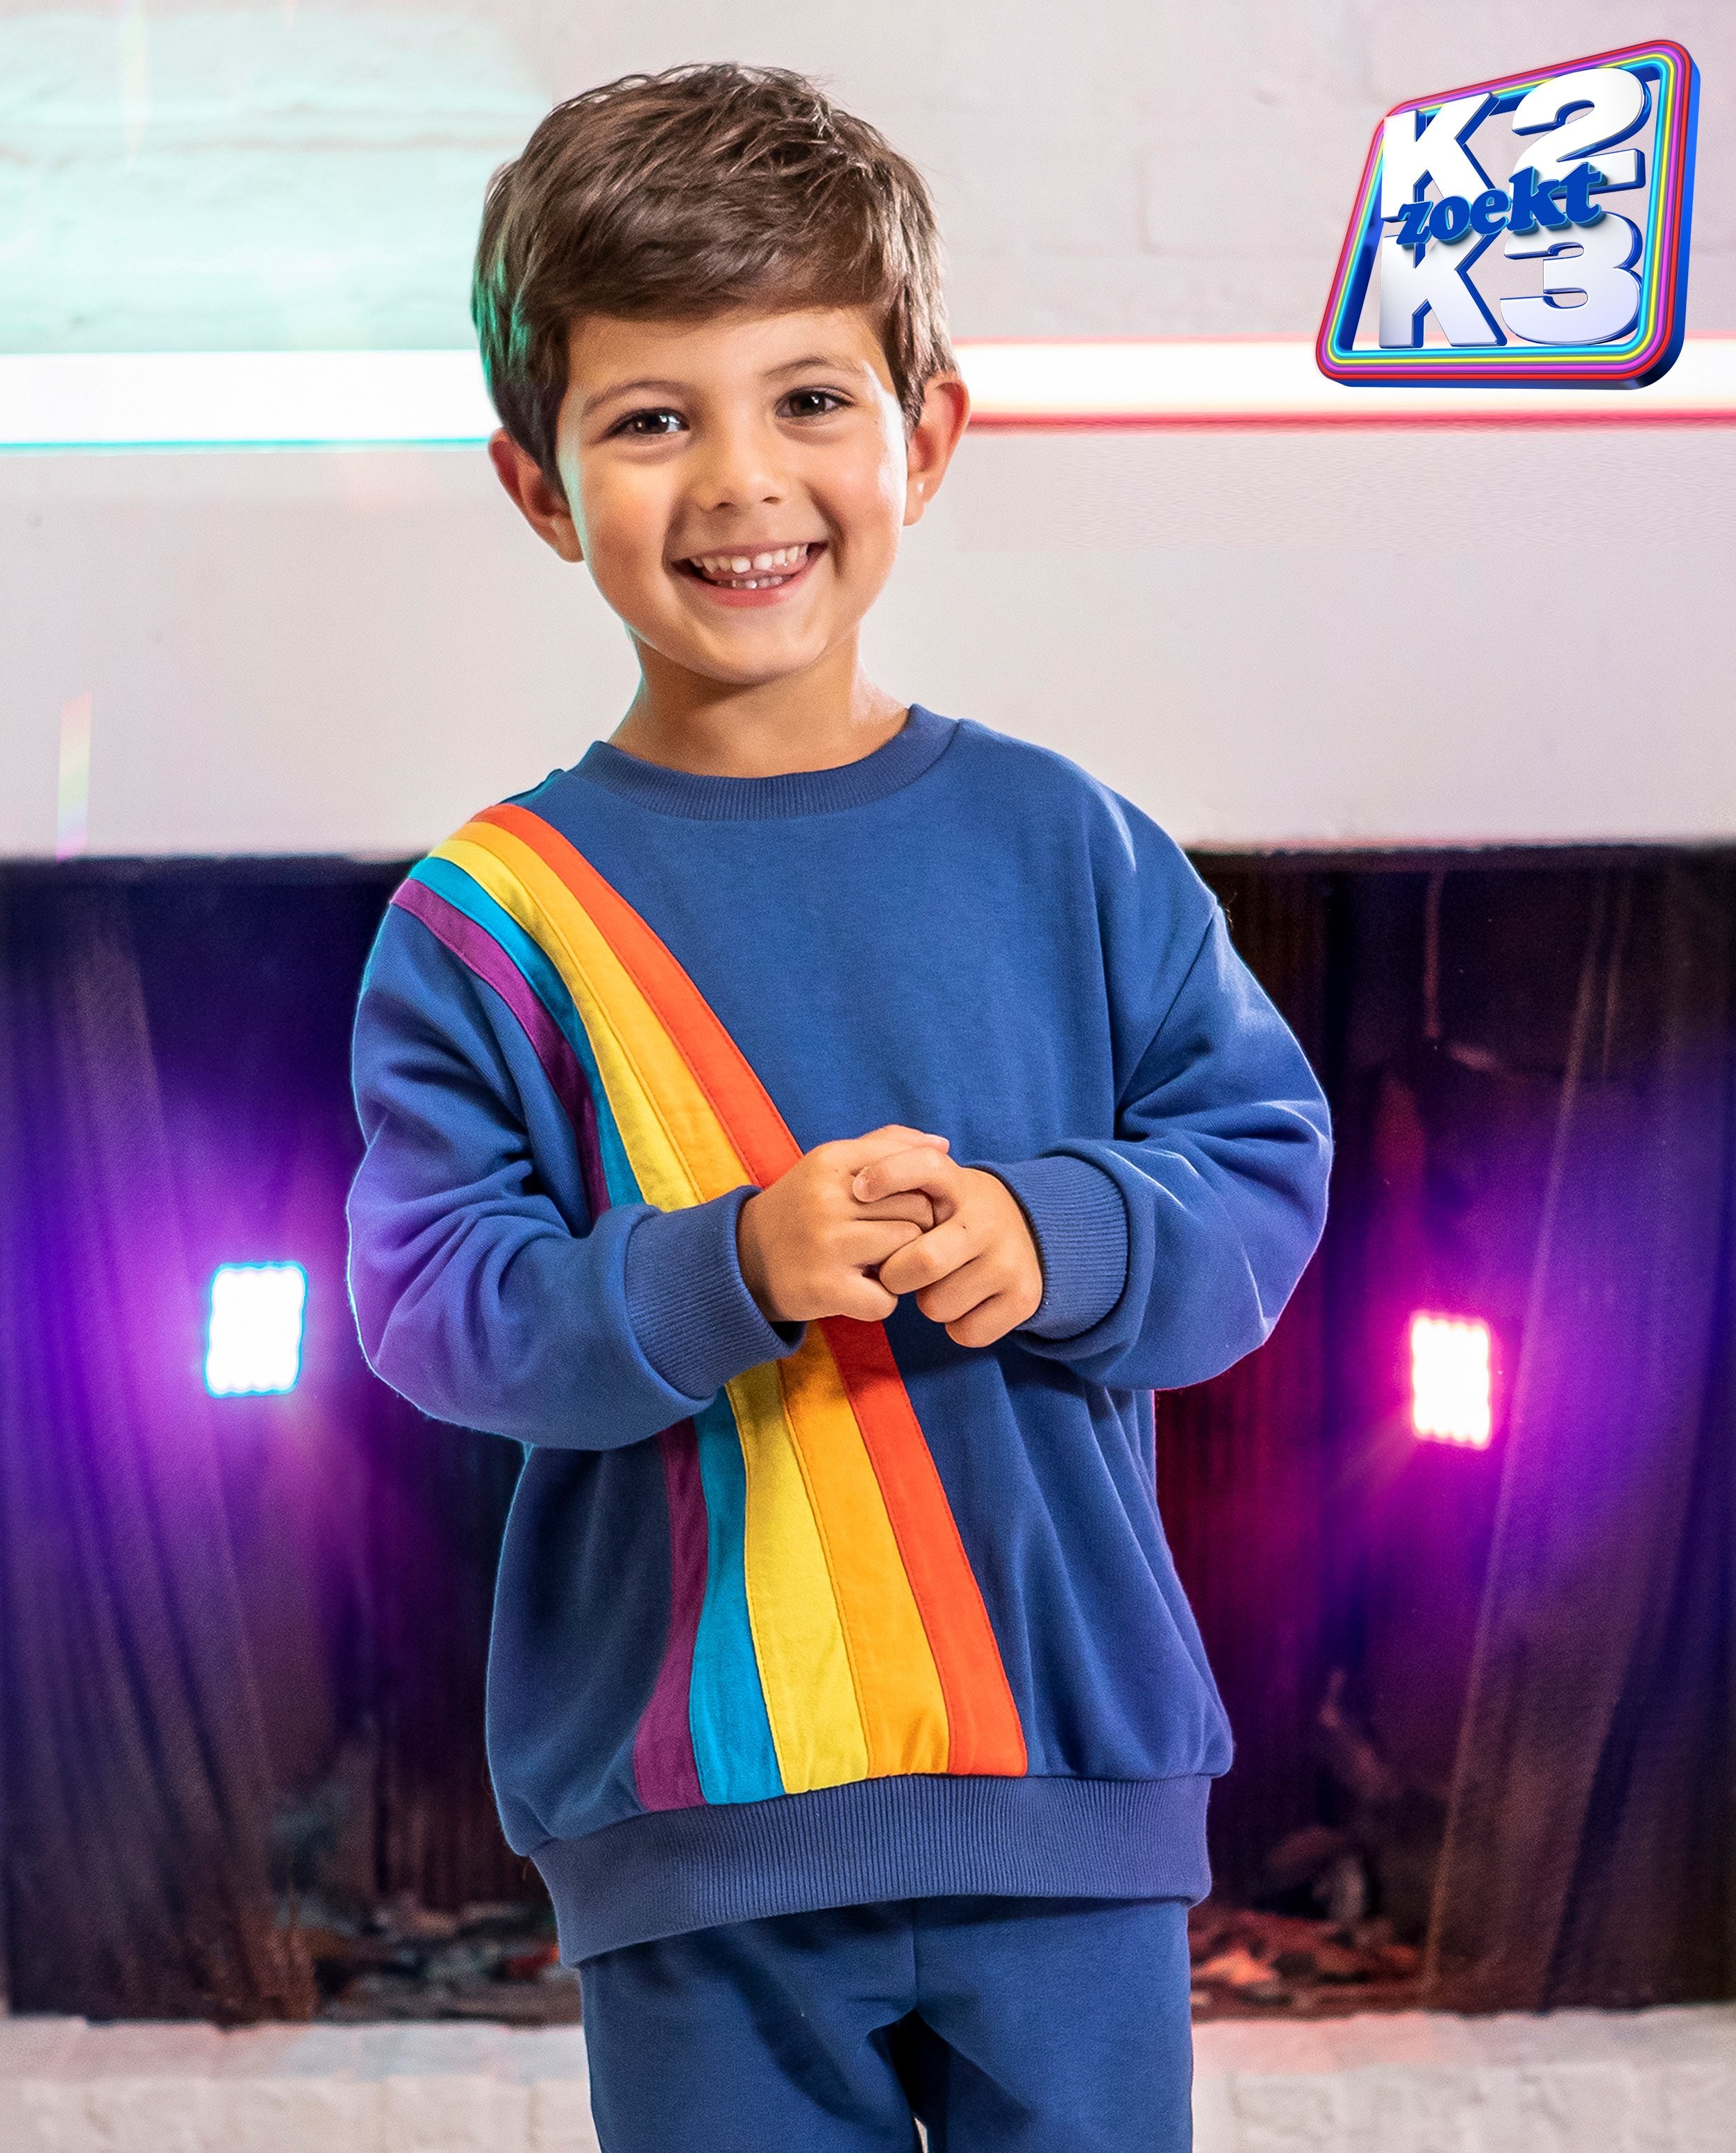 Reis suspensie Bestudeer Unisex kids sweater - Nieuwe iconische K3-outfit K2 zoekt K3 K3 | JBC  België België